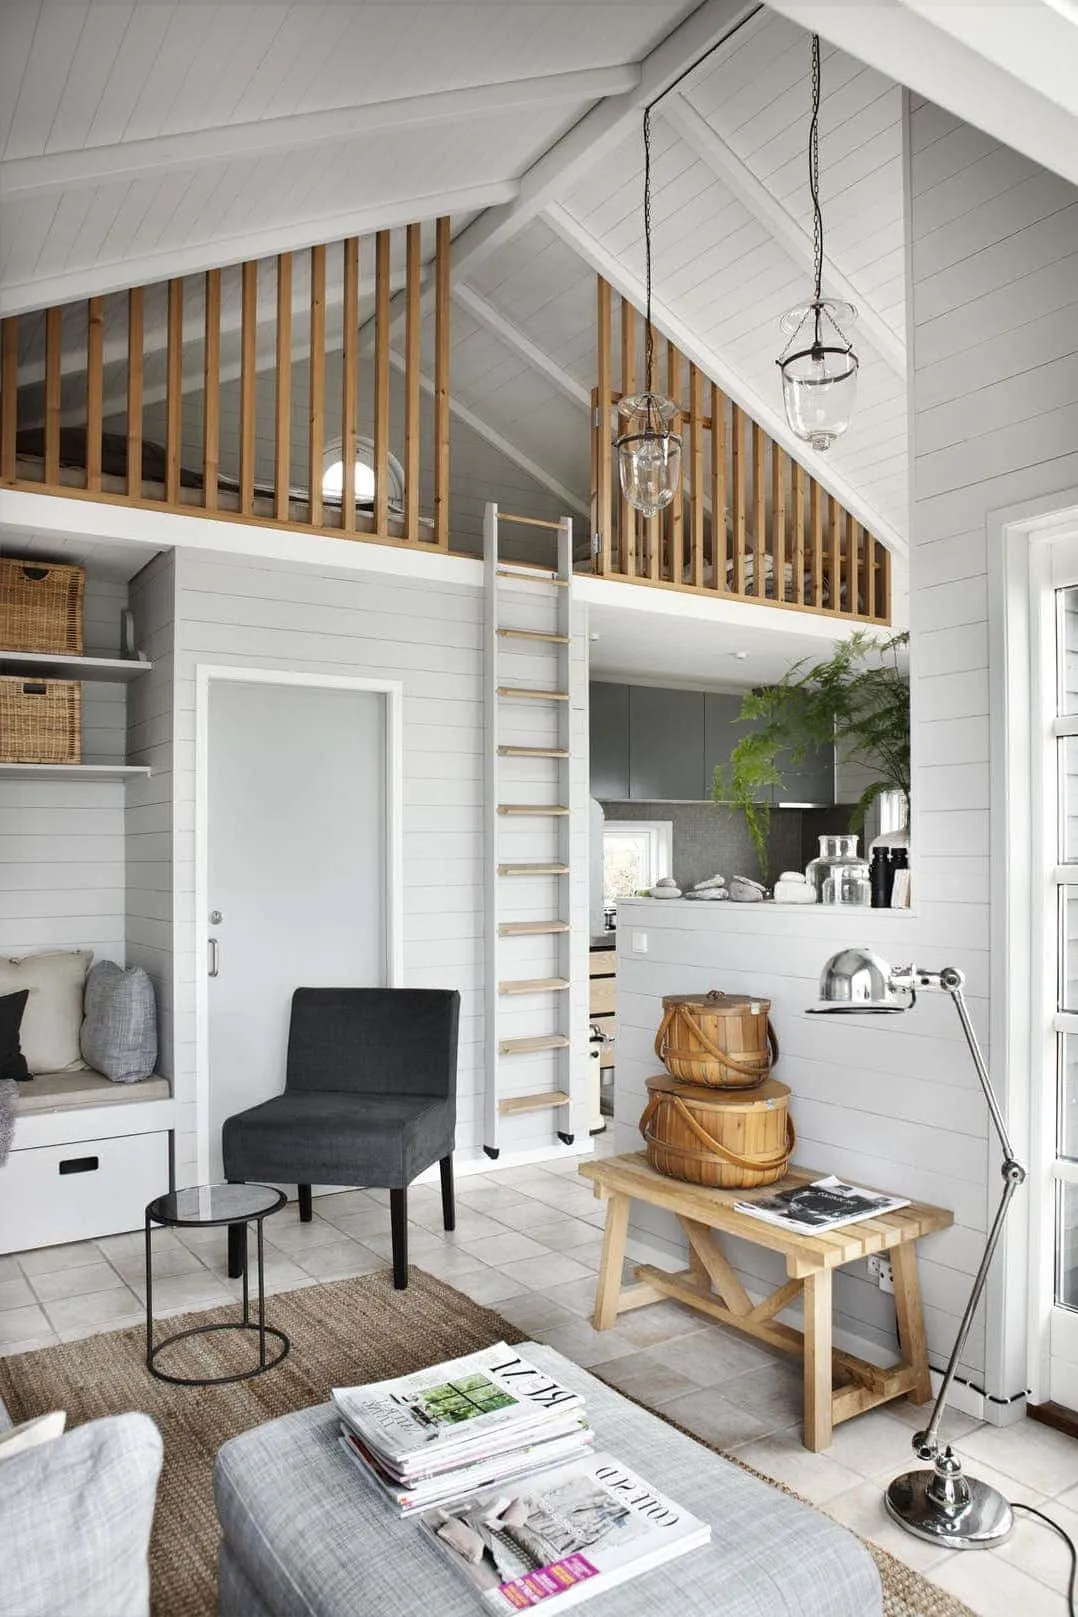 Помимо красоты, скандинавский дизайн гостиной должен обладать максимальной функциональностью и практичностью